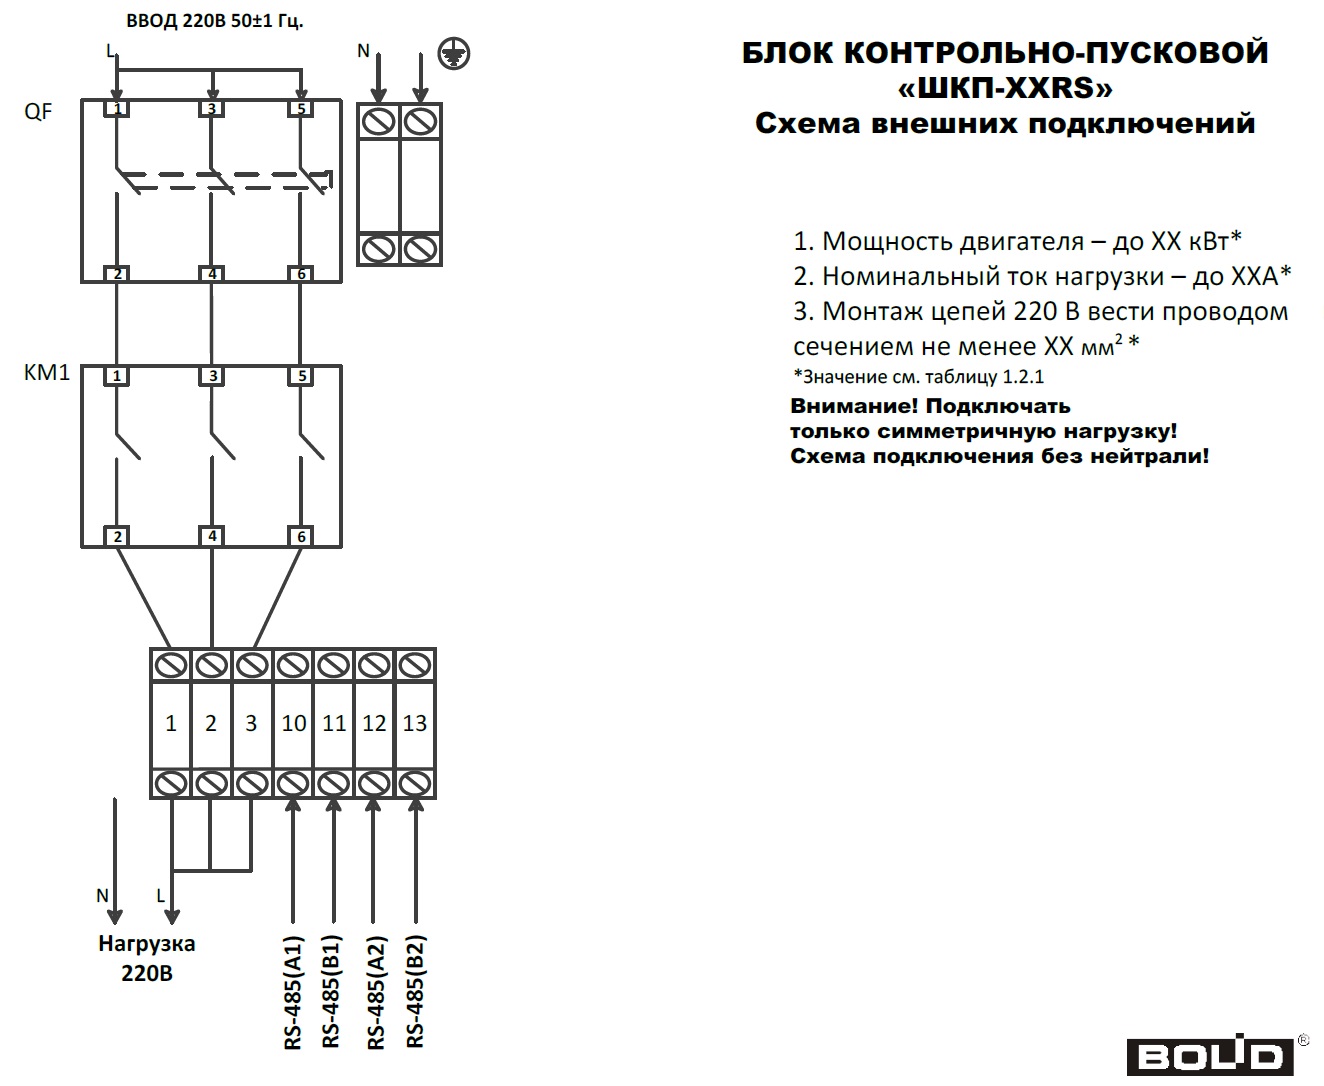 Схема подключения блоков ШКП-ххRS (М) при 220В